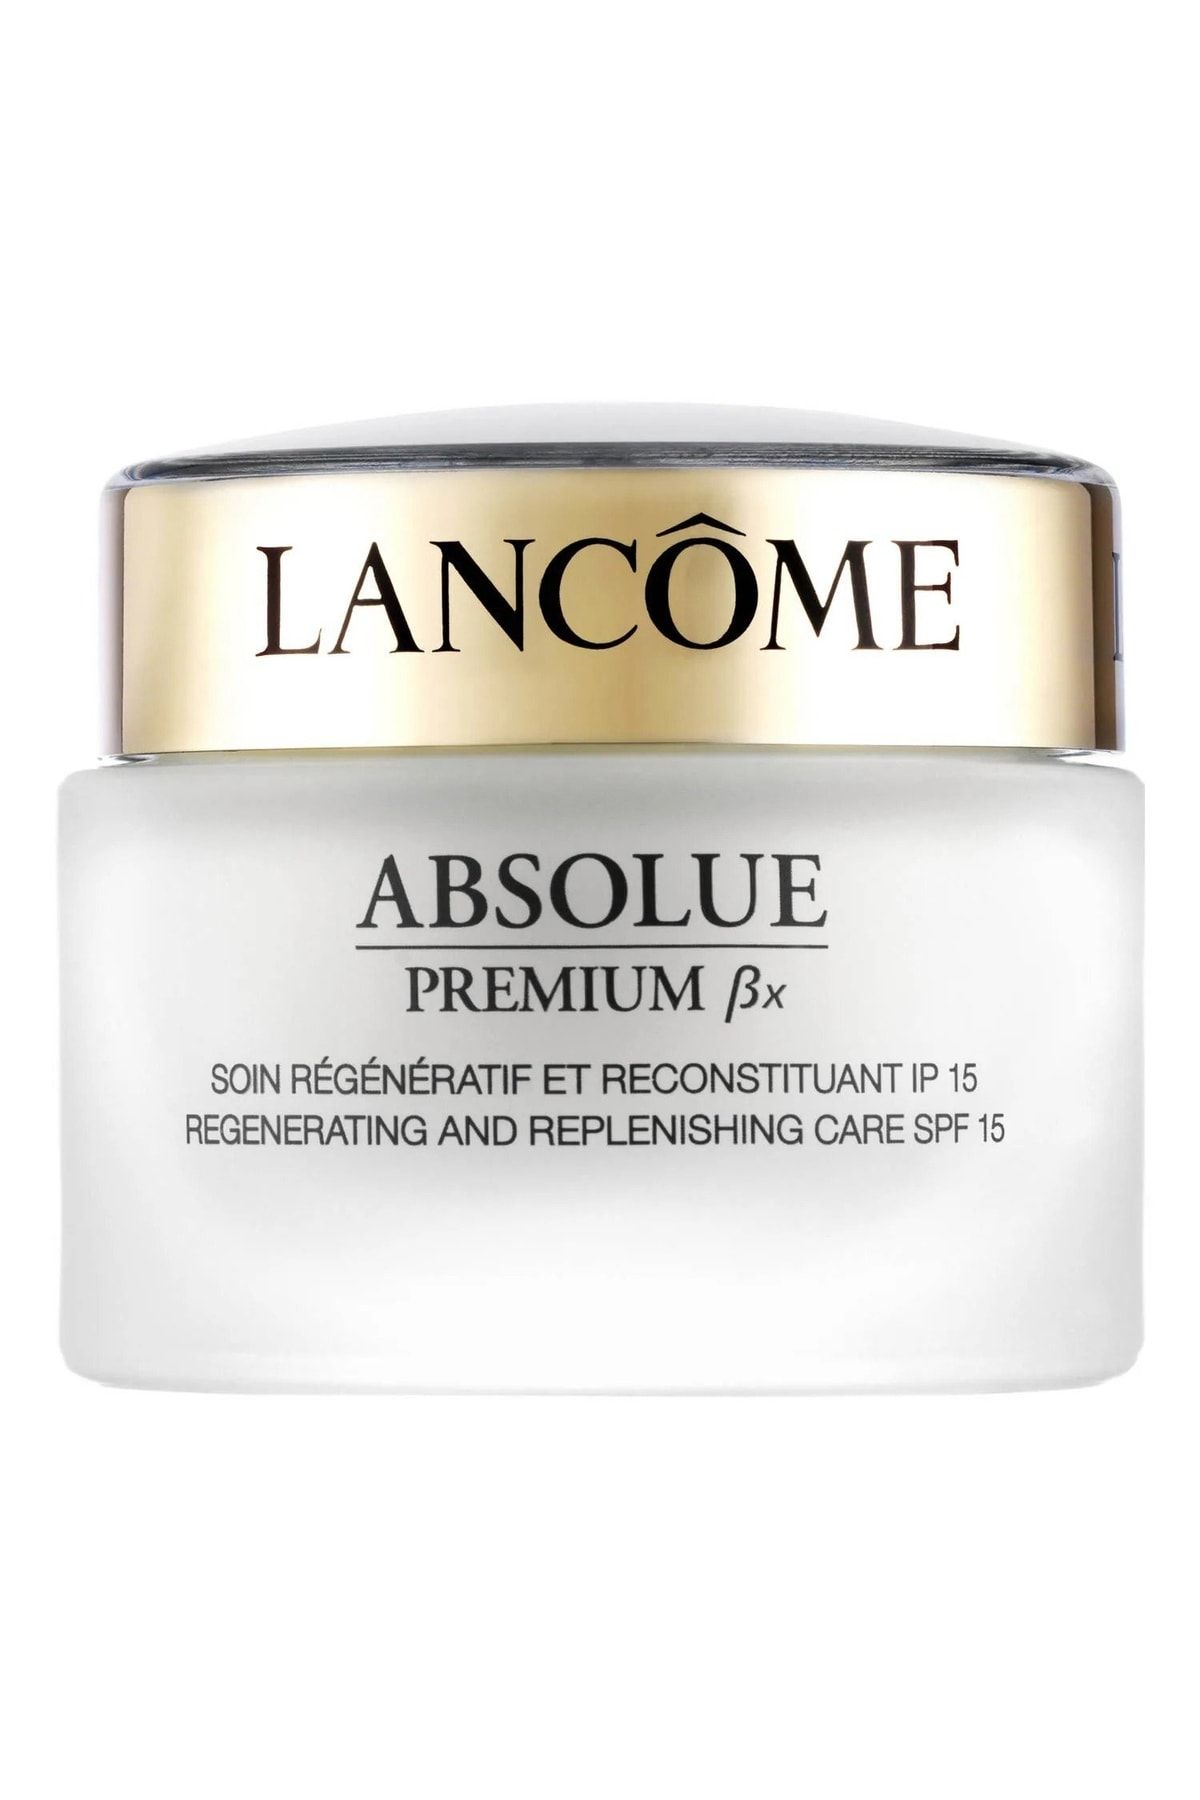 Lancome Absolue Premium ßx-spf15 Elastikiyet Kaybı Ve Kırışıklık Bakımına Yardımcı Gündüz Bakım Kremi 50 Ml